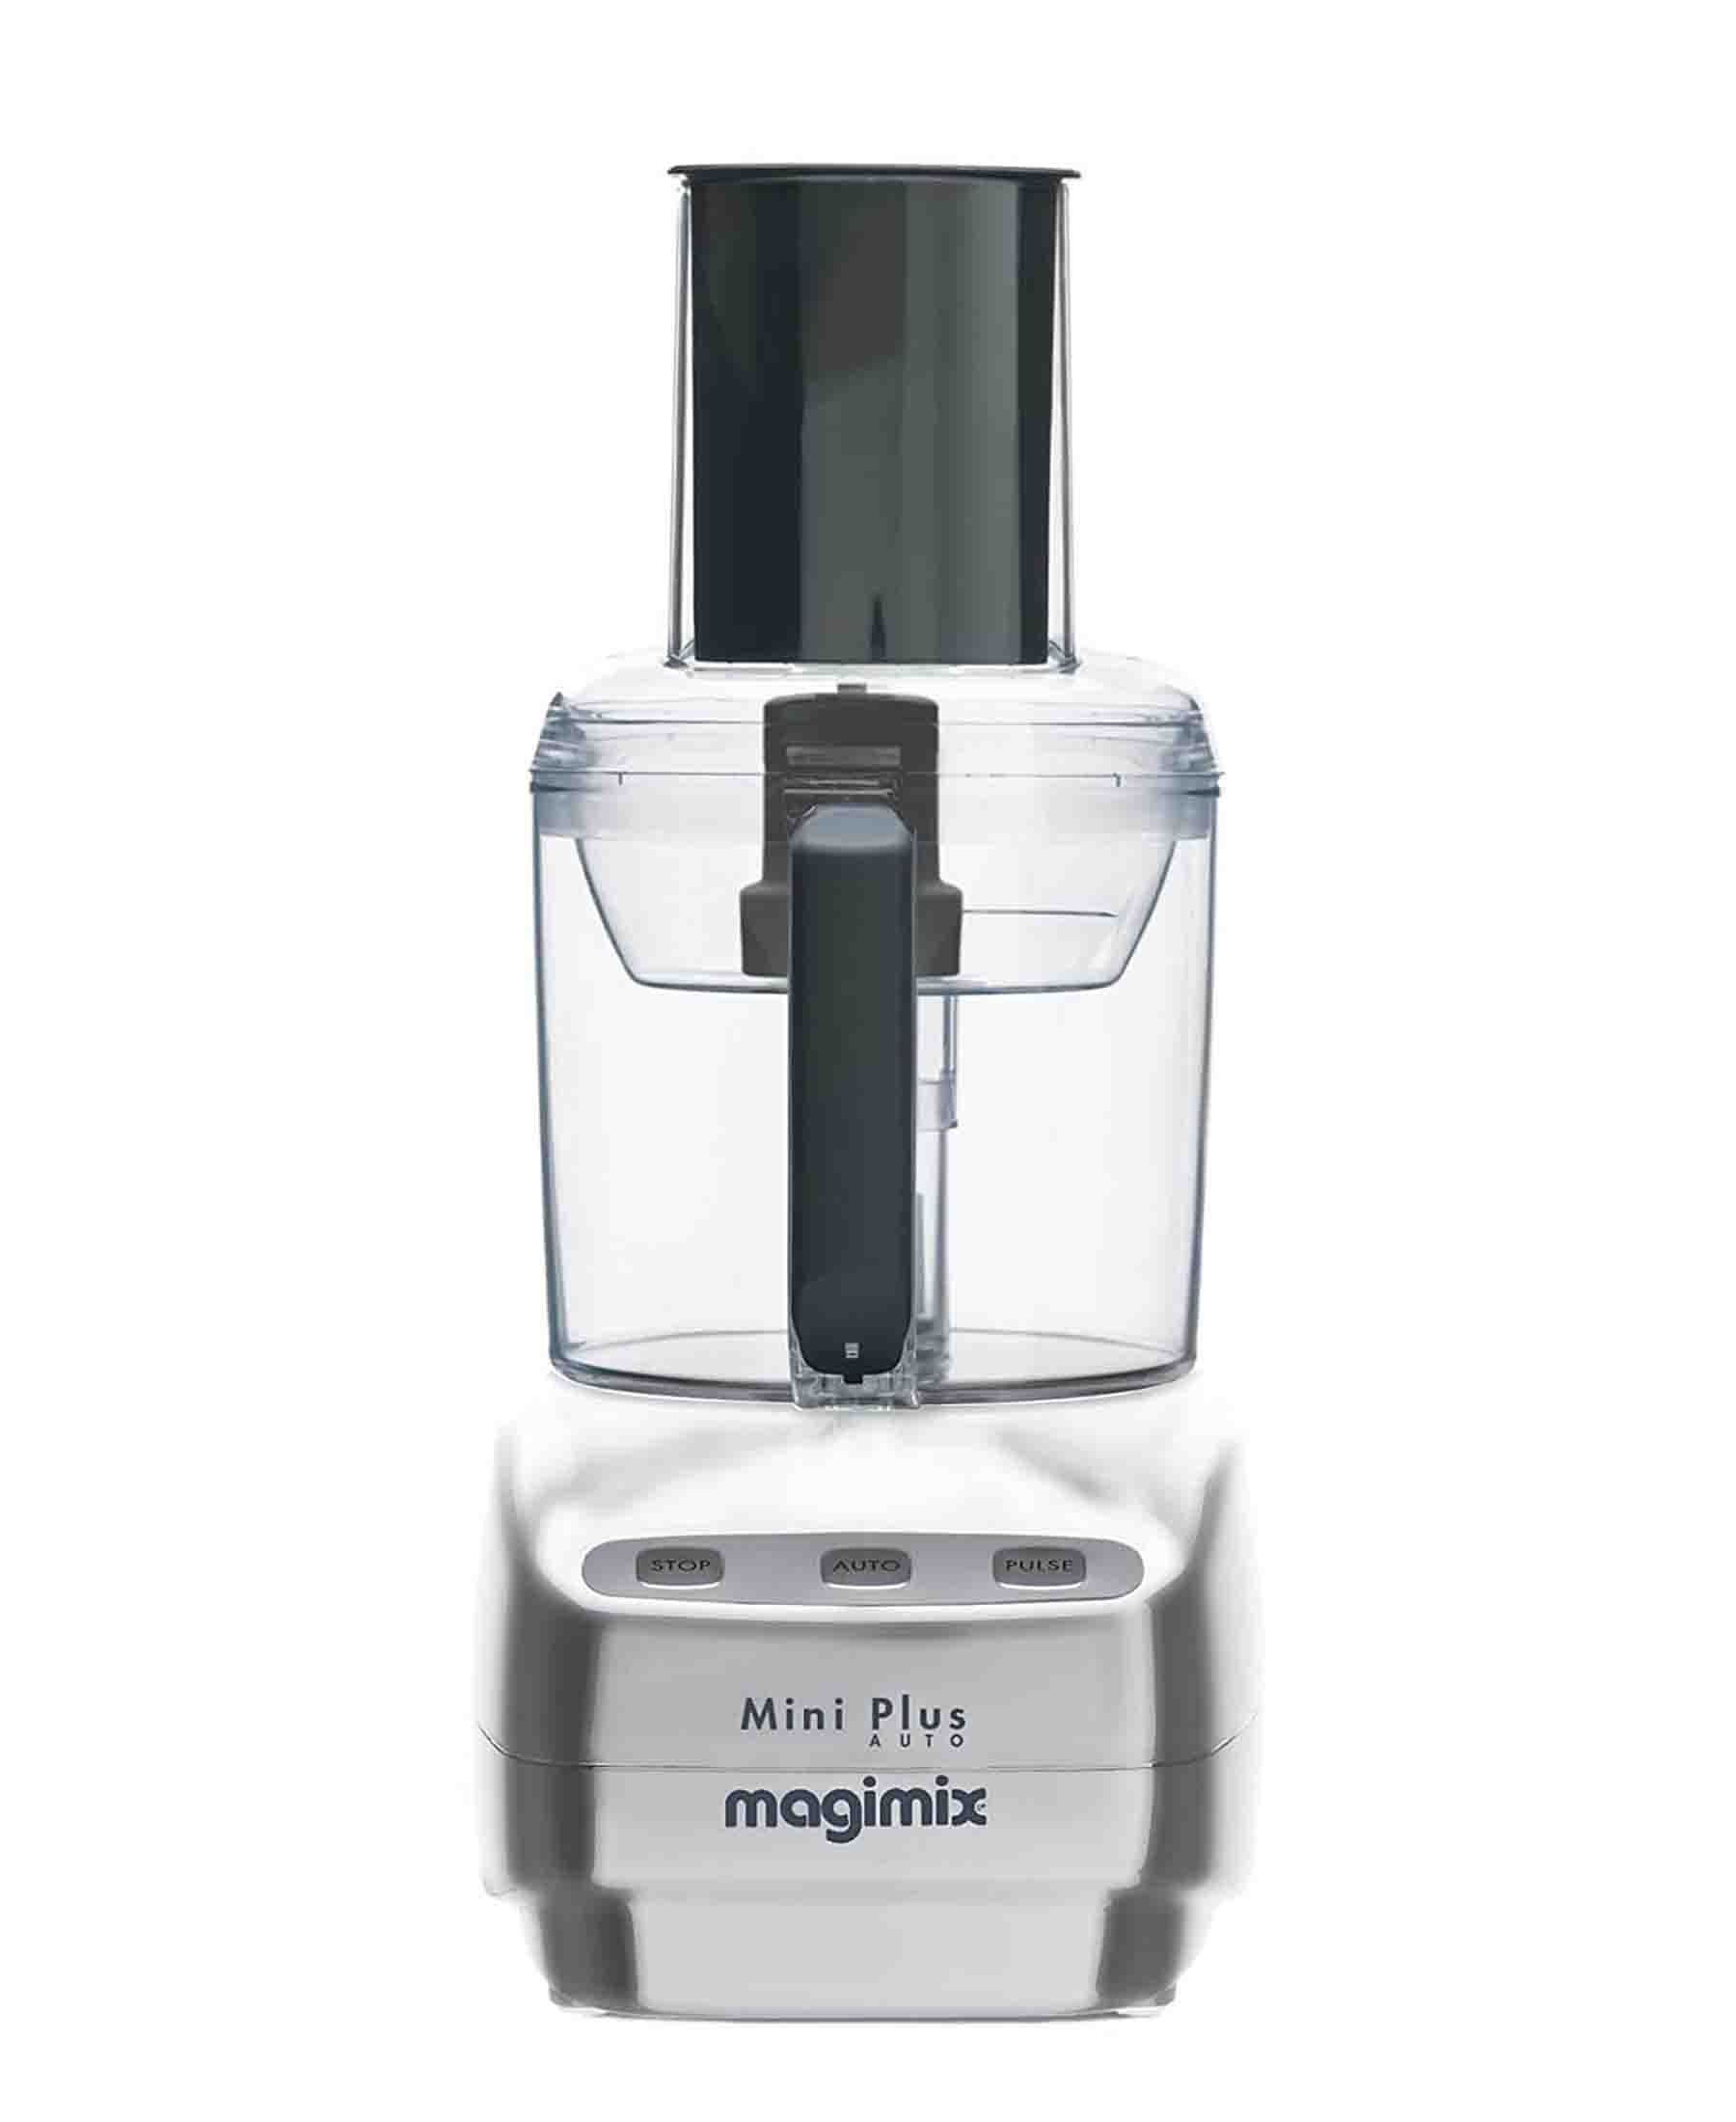 Magimix Le Mini Plus 1.7L Food Processor - Satin